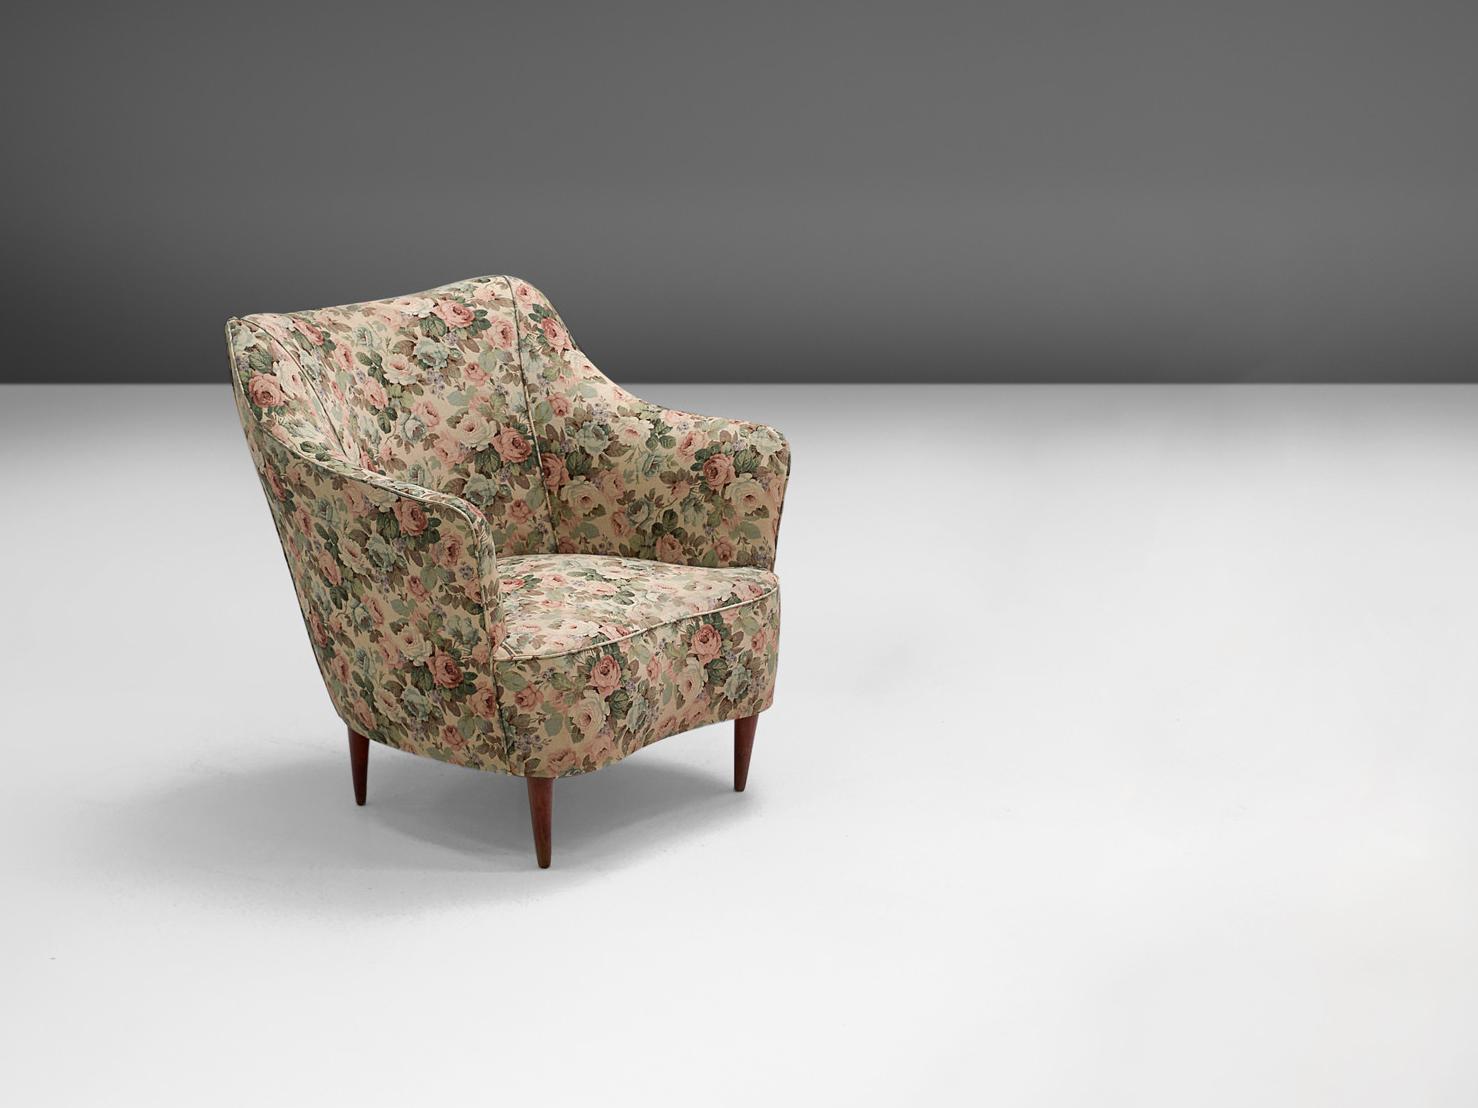 Dans le style de Gio Ponti, chaise longue, bois et tissu floral, Italie, années 1940.

Fauteuil club élégant et romantique conçu dans le style de Gio Ponti avec un rembourrage original de faune et de flore. Le design repose sur une splendide